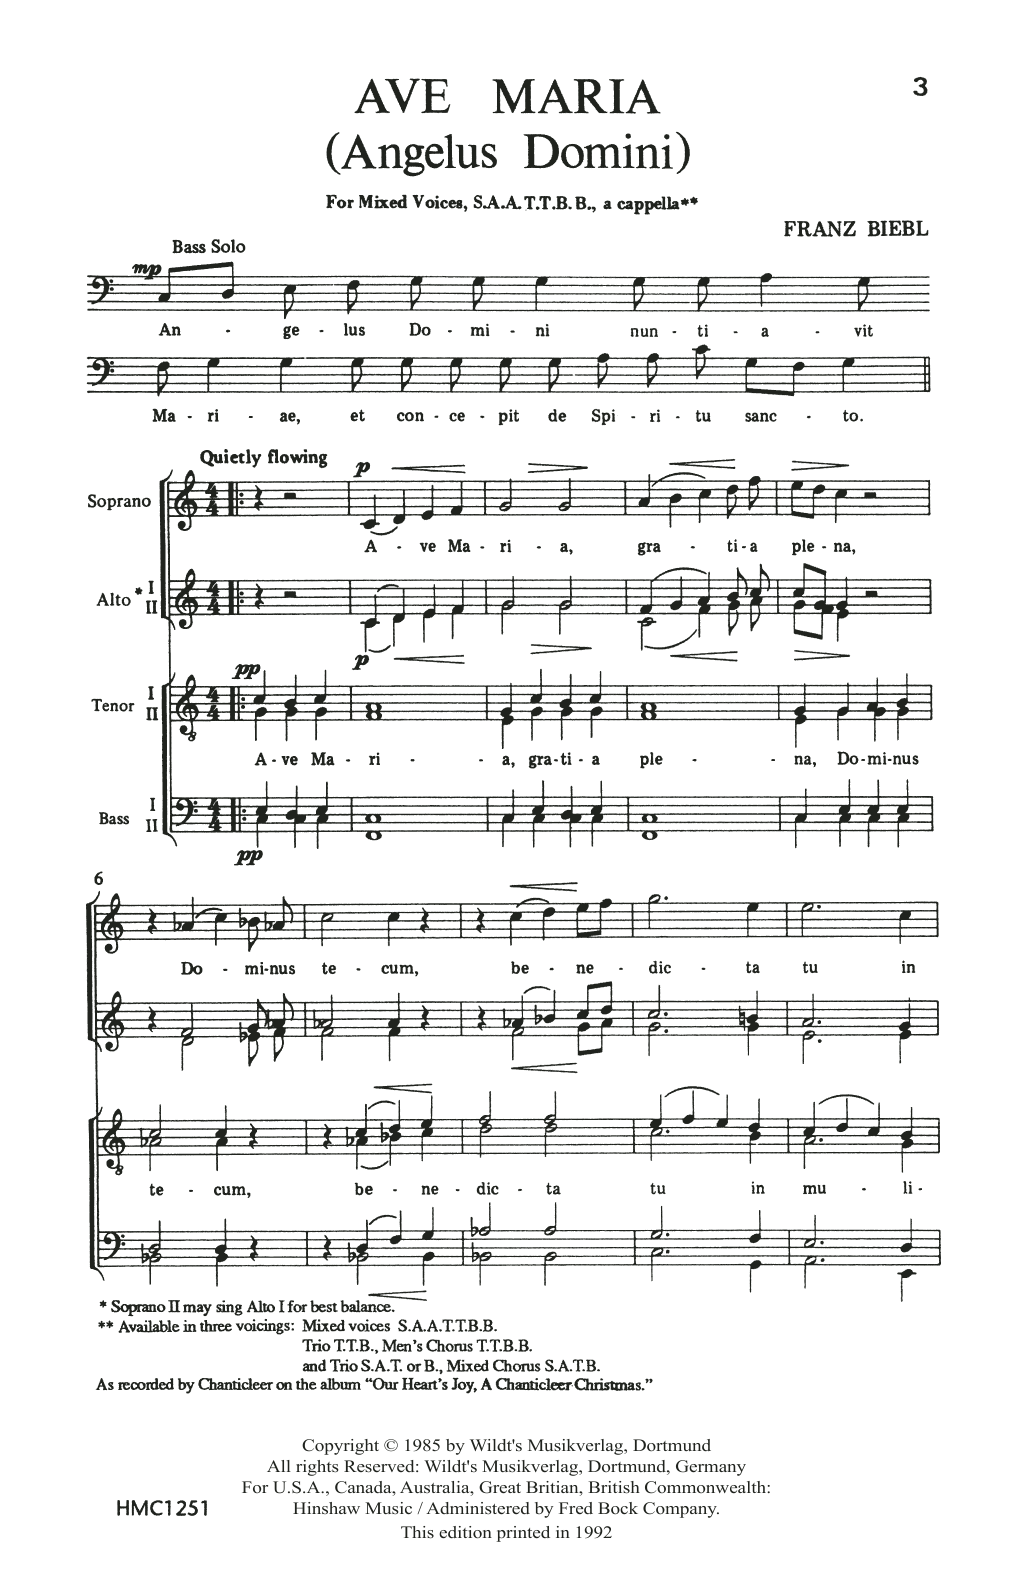 Franz Biebl Ave Maria Sheet Music Notes & Chords for TTB Choir - Download or Print PDF